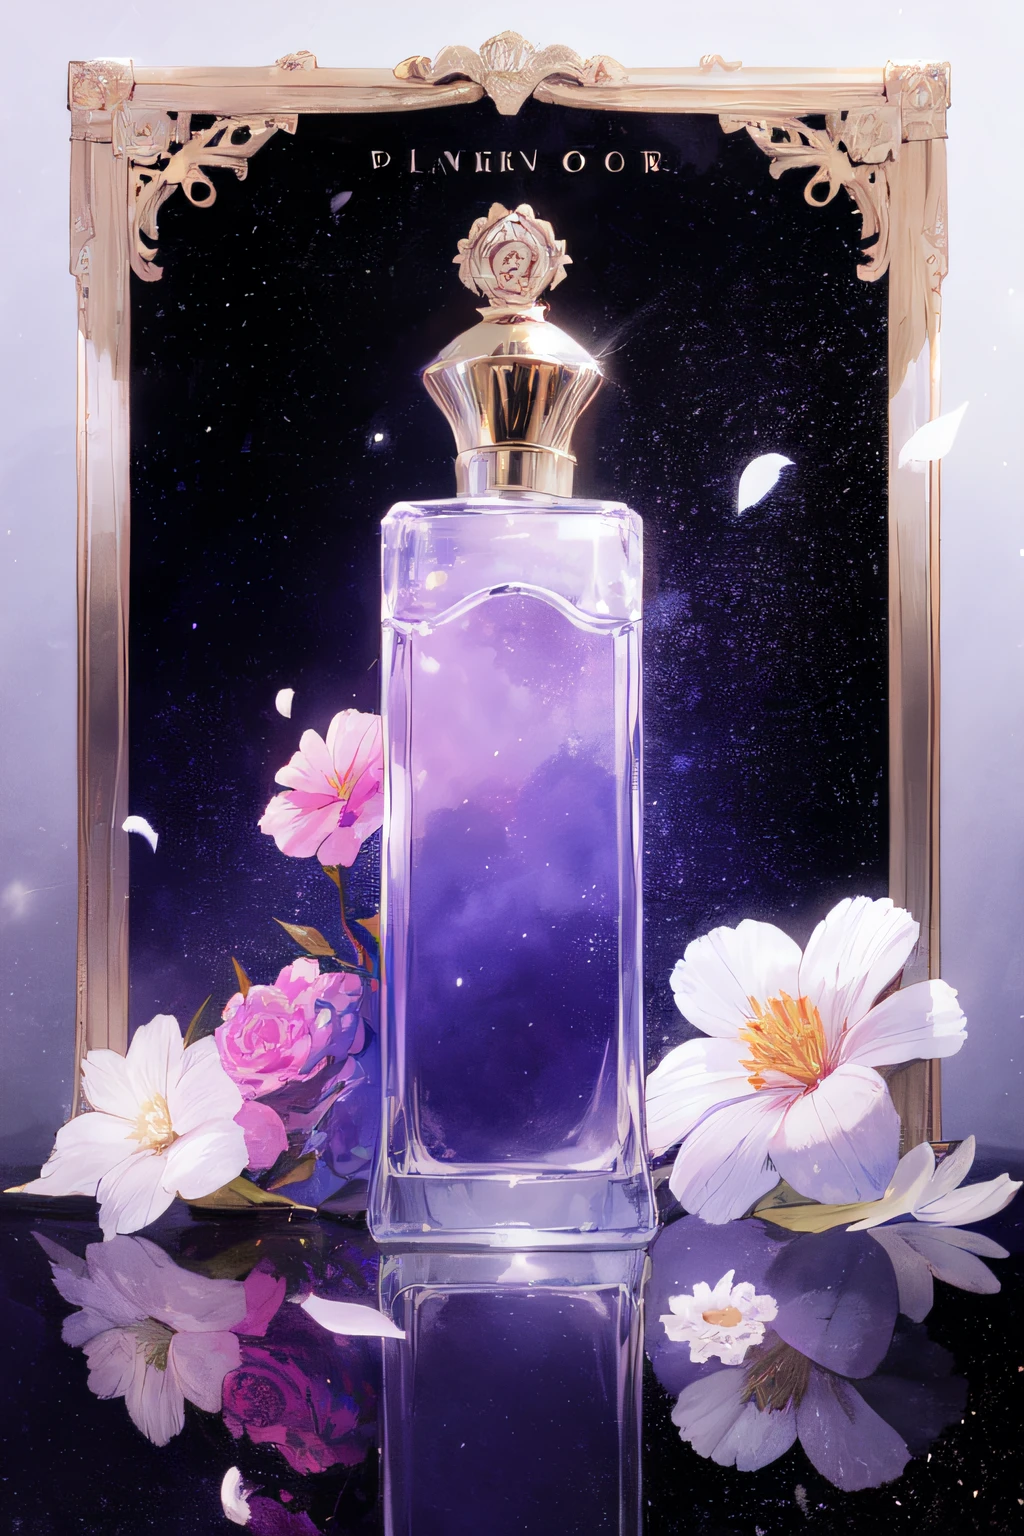 no human, botella de perfume, Flores rosadas, Flores blancas, el universo, Tema morado, fondo negro